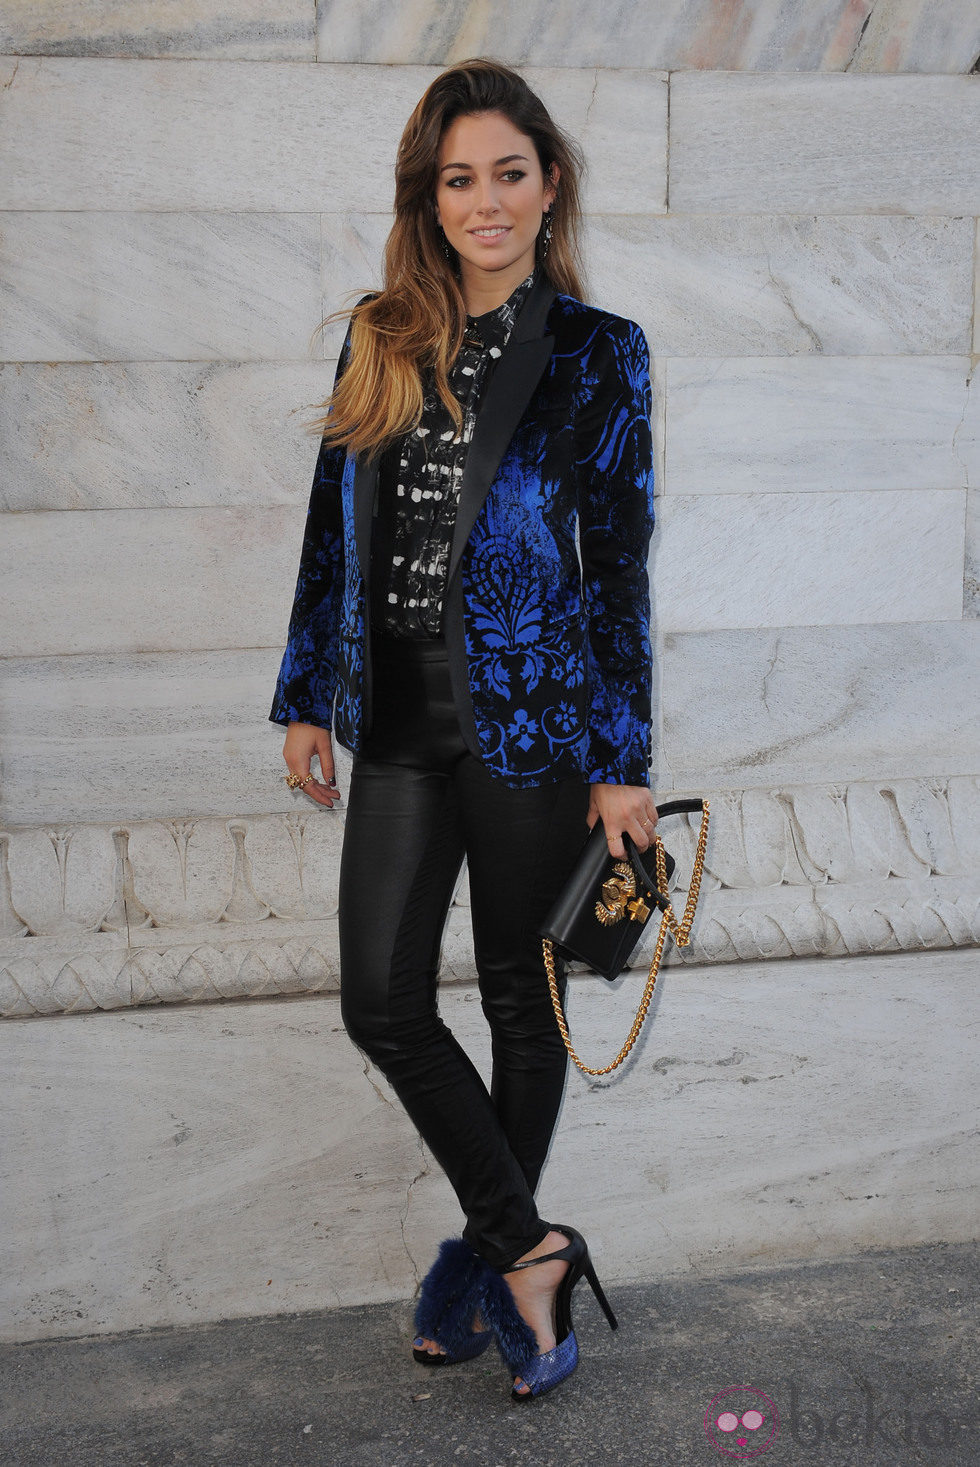 Blanca Suárez en la Semana de la Moda de Milán 2013